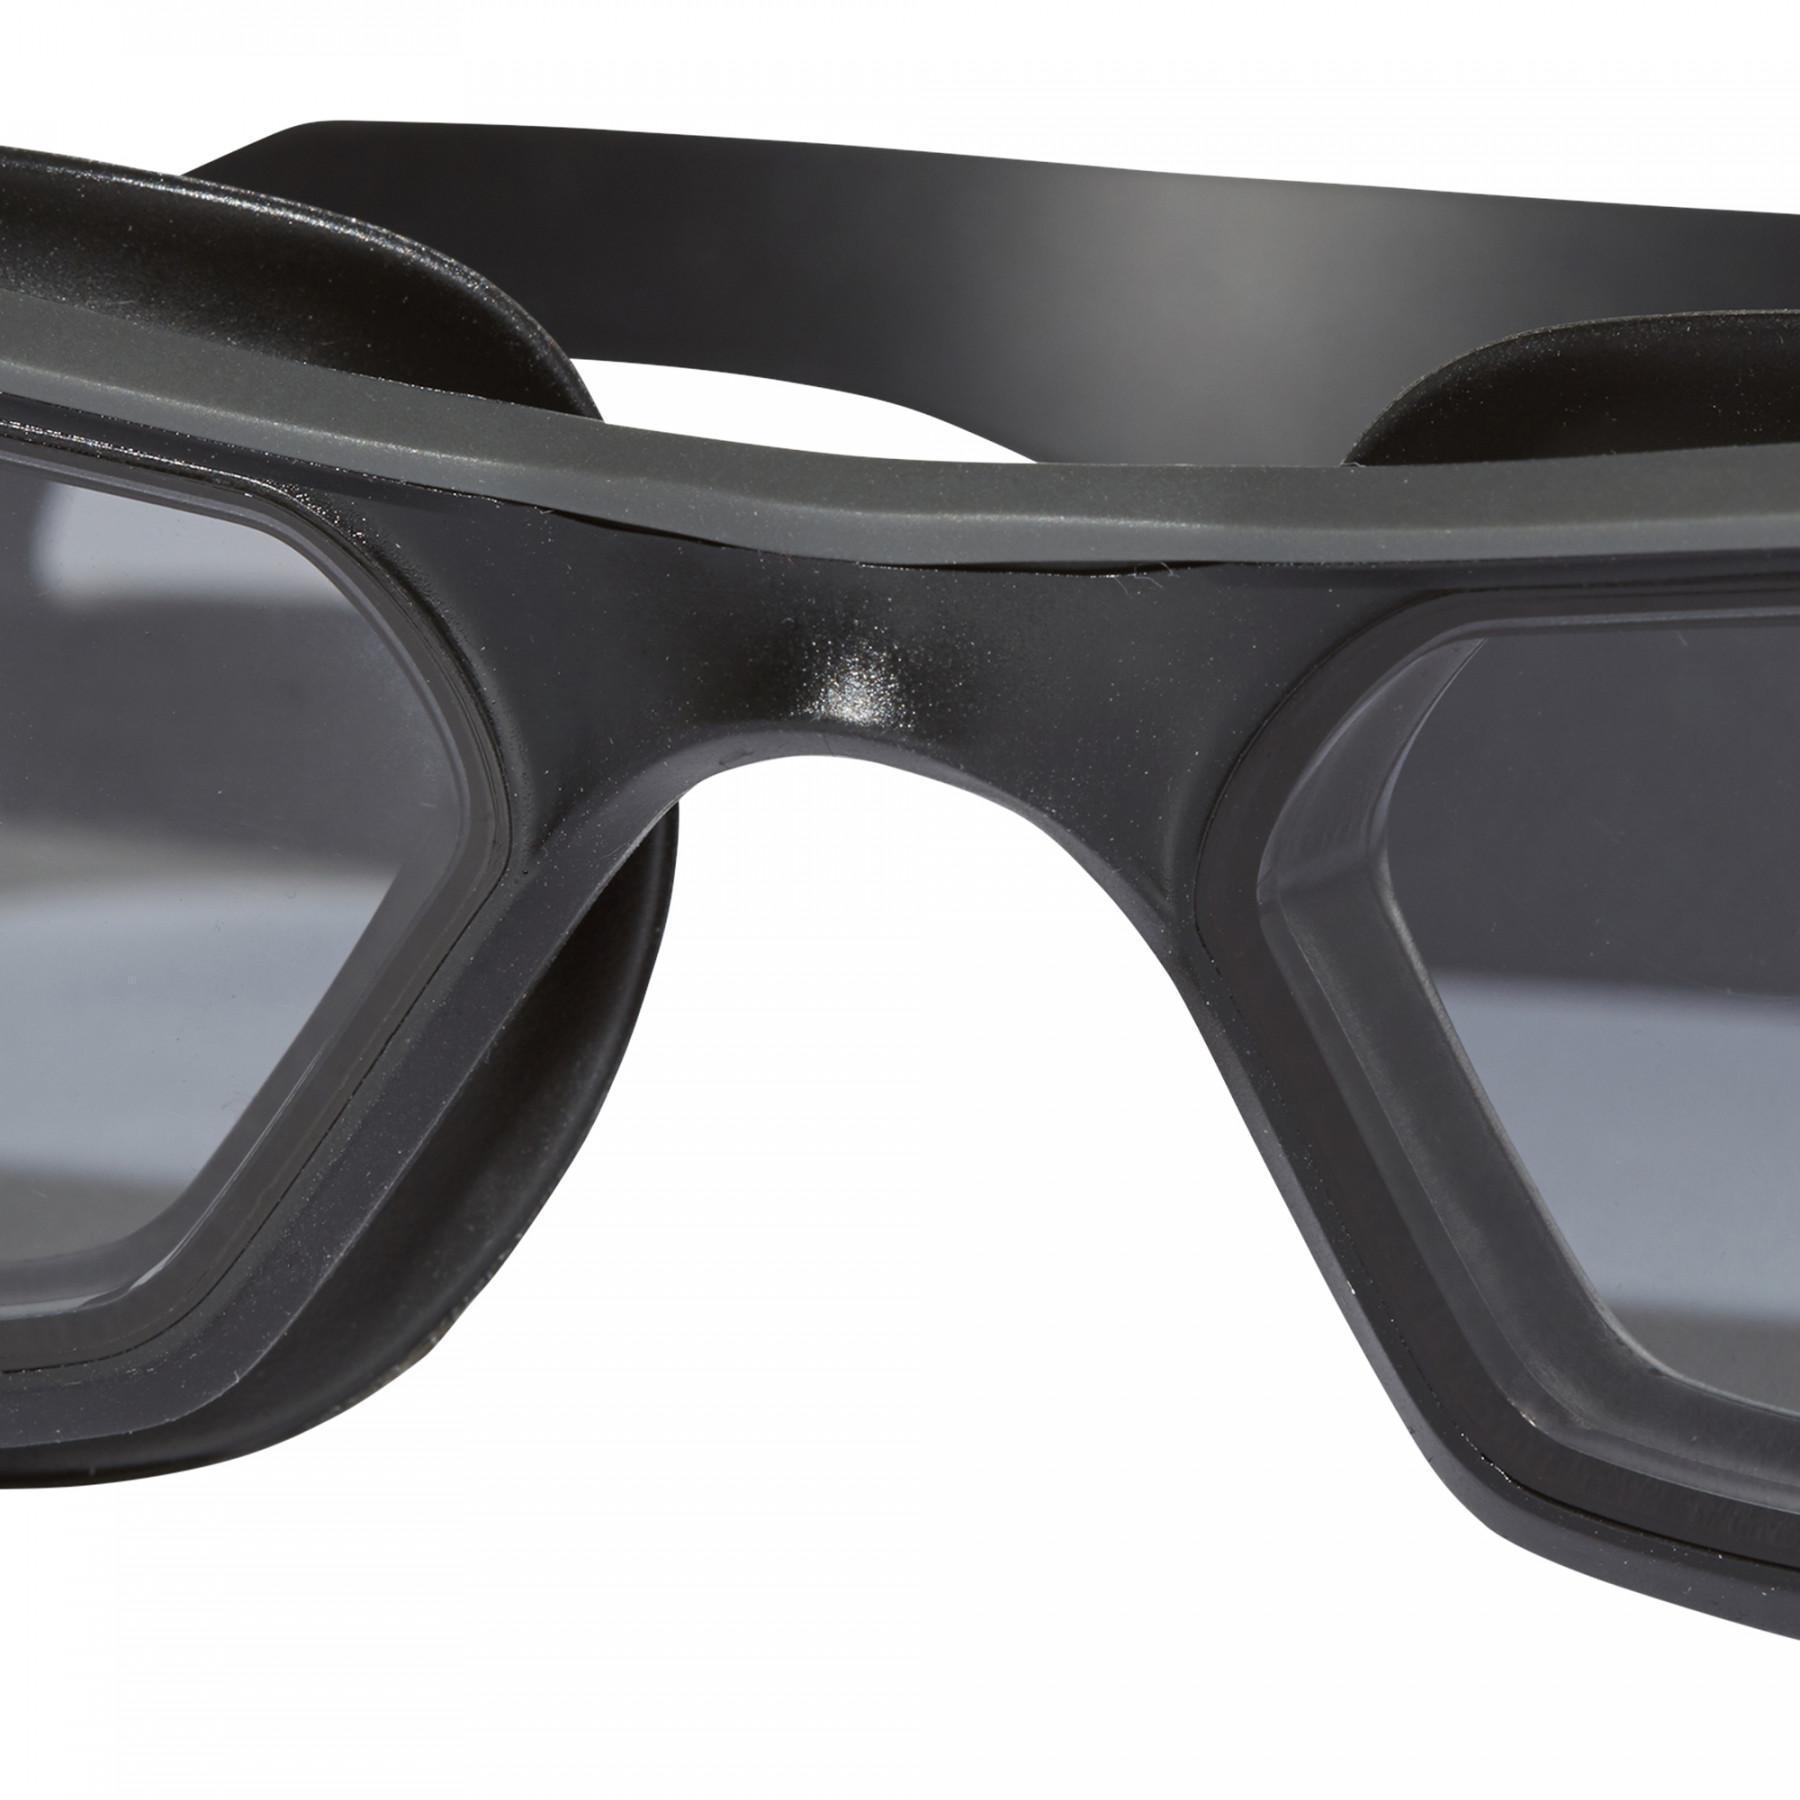 Óculos de natação para crianças adidas Persistar 180 Unmirrored